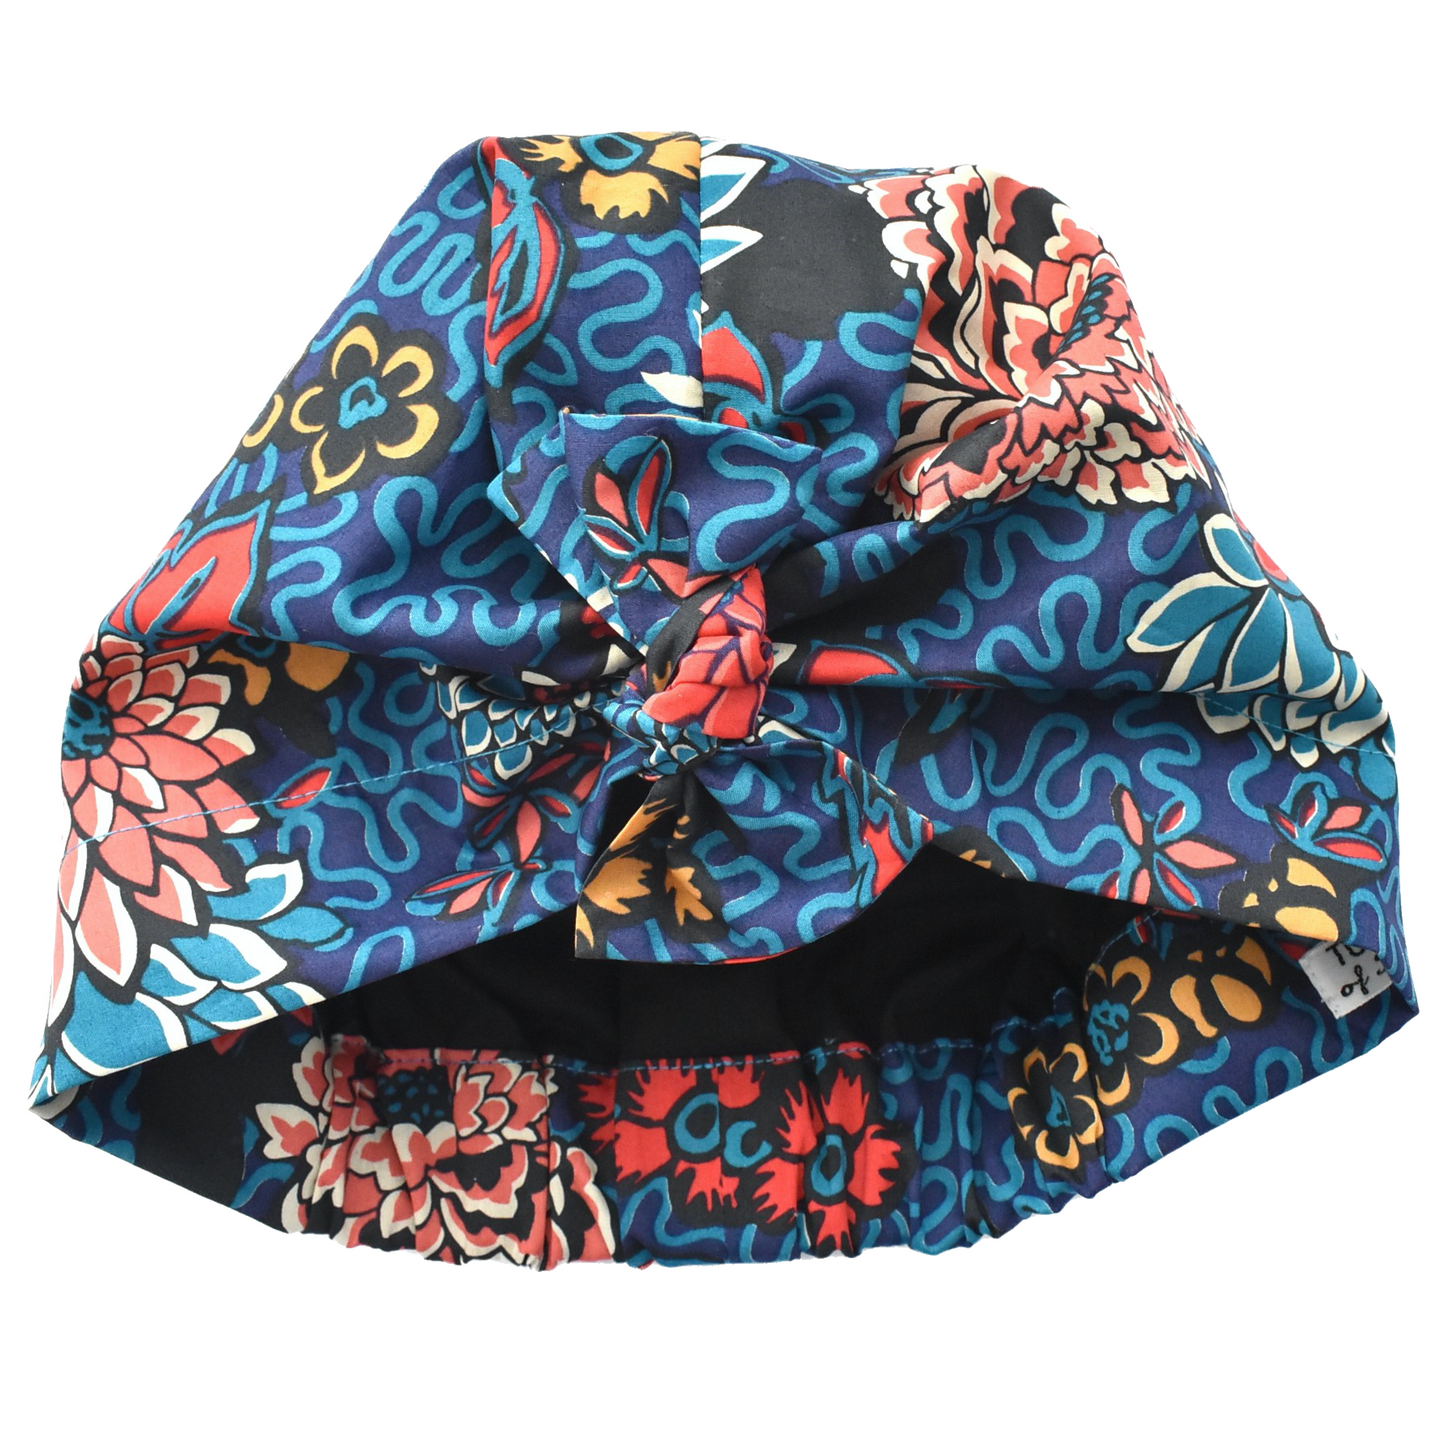 Ladies Turban Hat - Vintage Liberty of London Meandering floral print